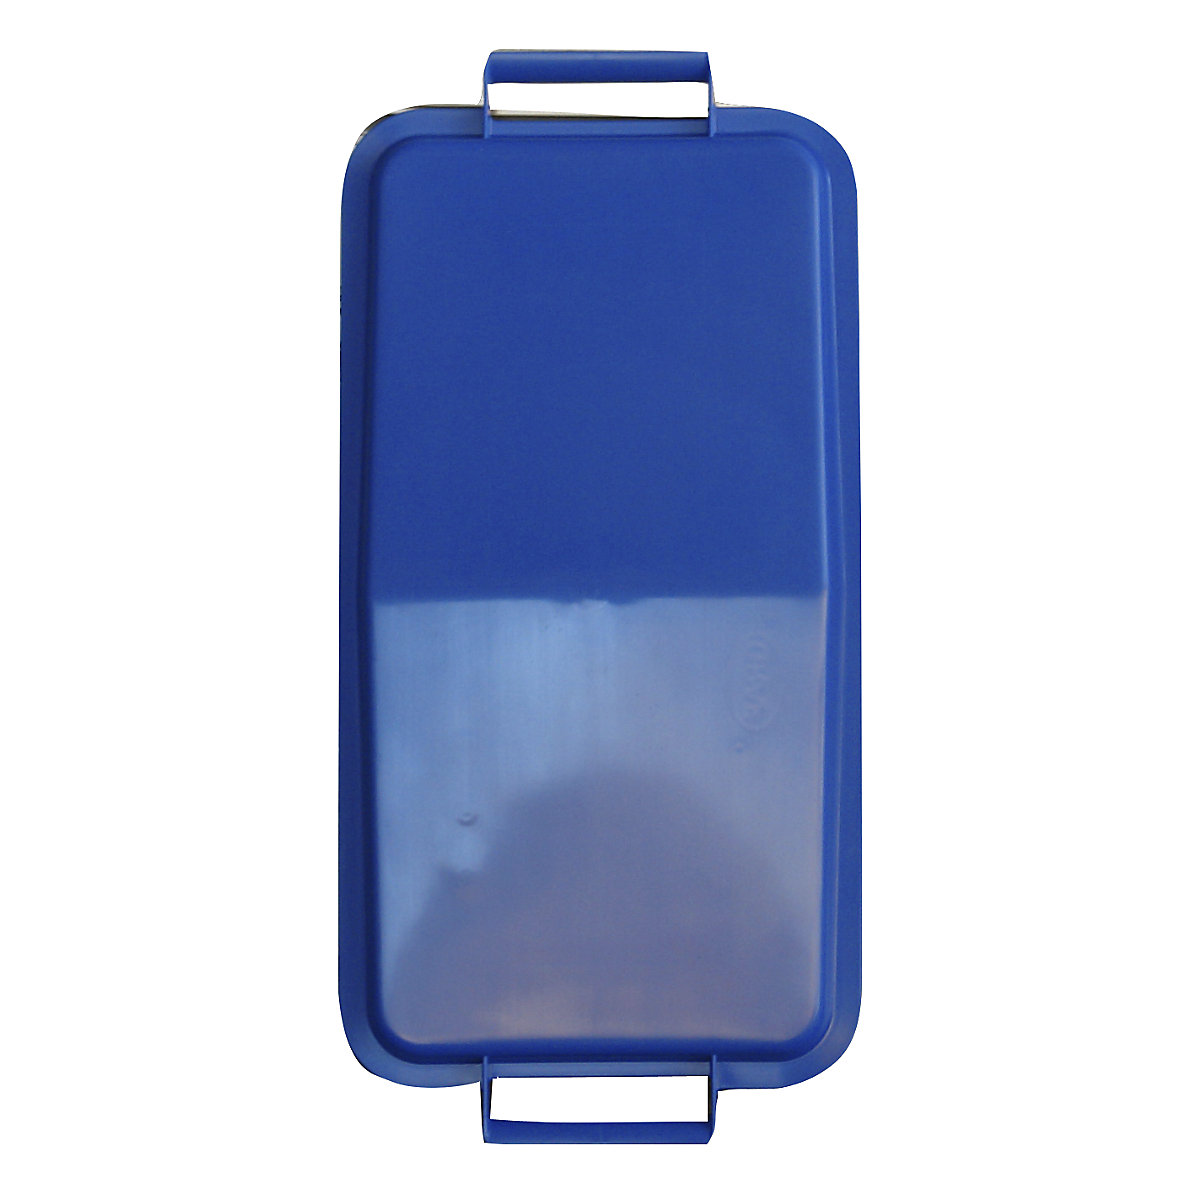 Steckdeckel, mit 2 Handgriffen, für Inhalt 60 l, lose aufliegend, blau-3